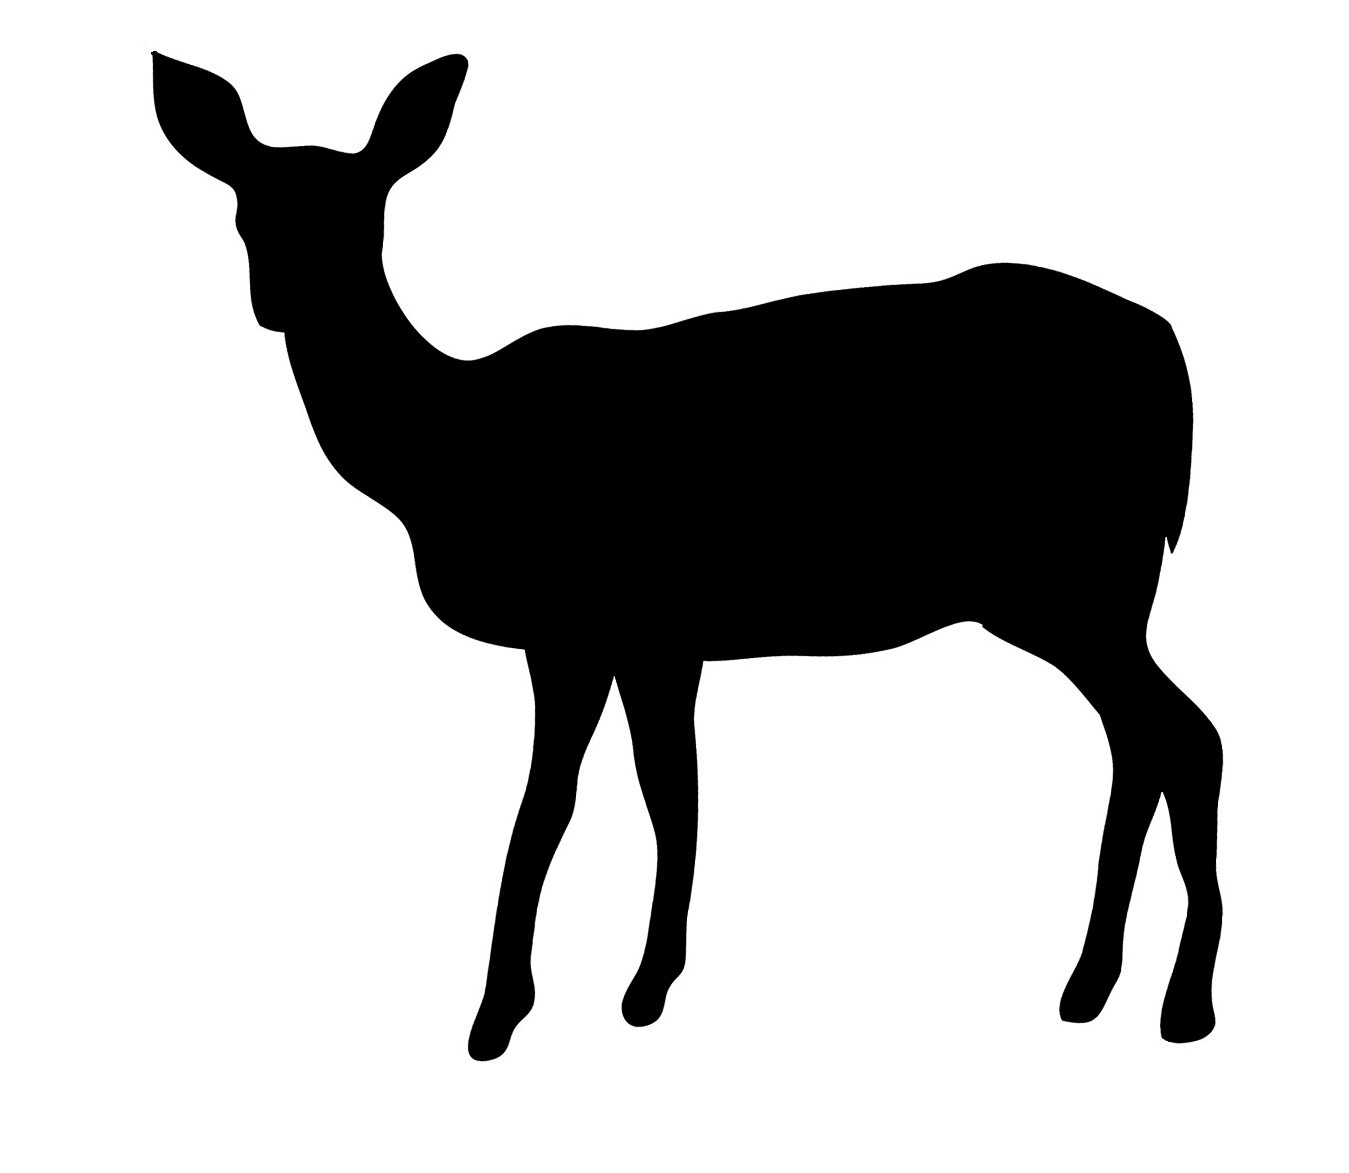 deer silhouette black frontal looking